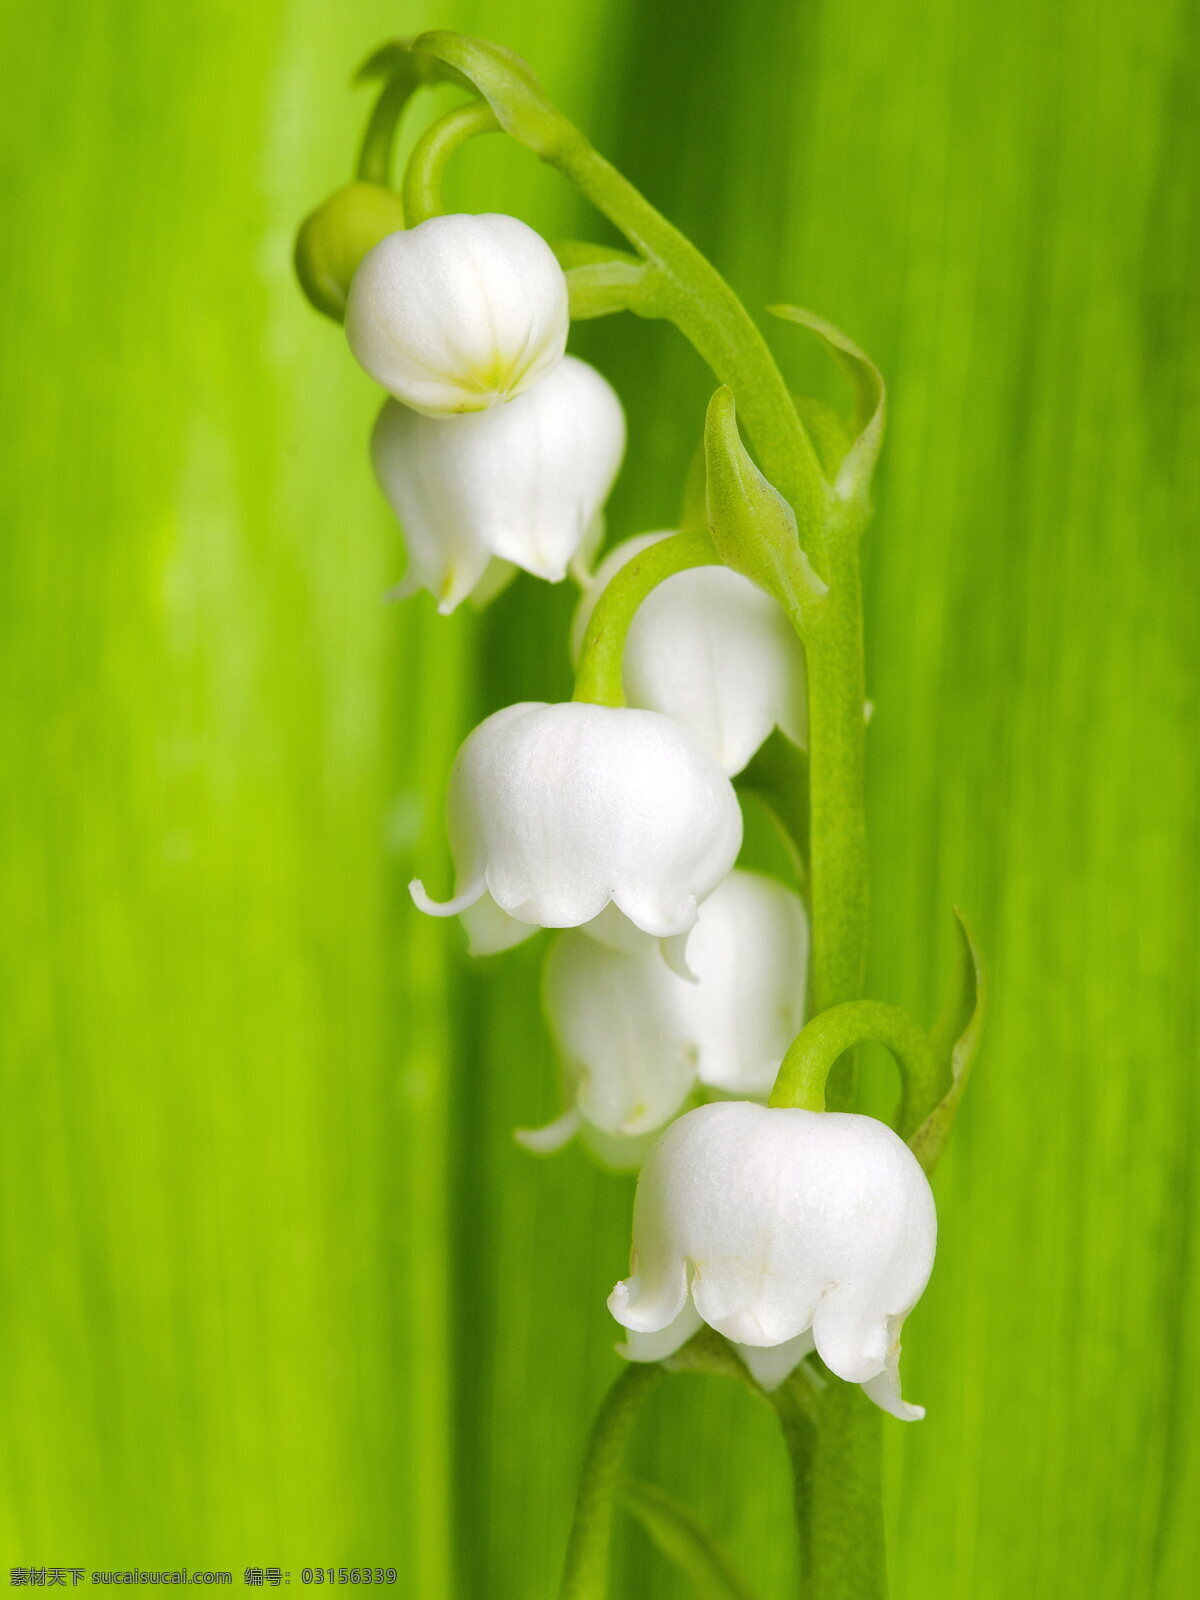 铃兰 白色花朵 风铃花 风铃草 白花 绿叶 叶子 鲜花 花穗 花朵 花卉 花草 植物 生物世界